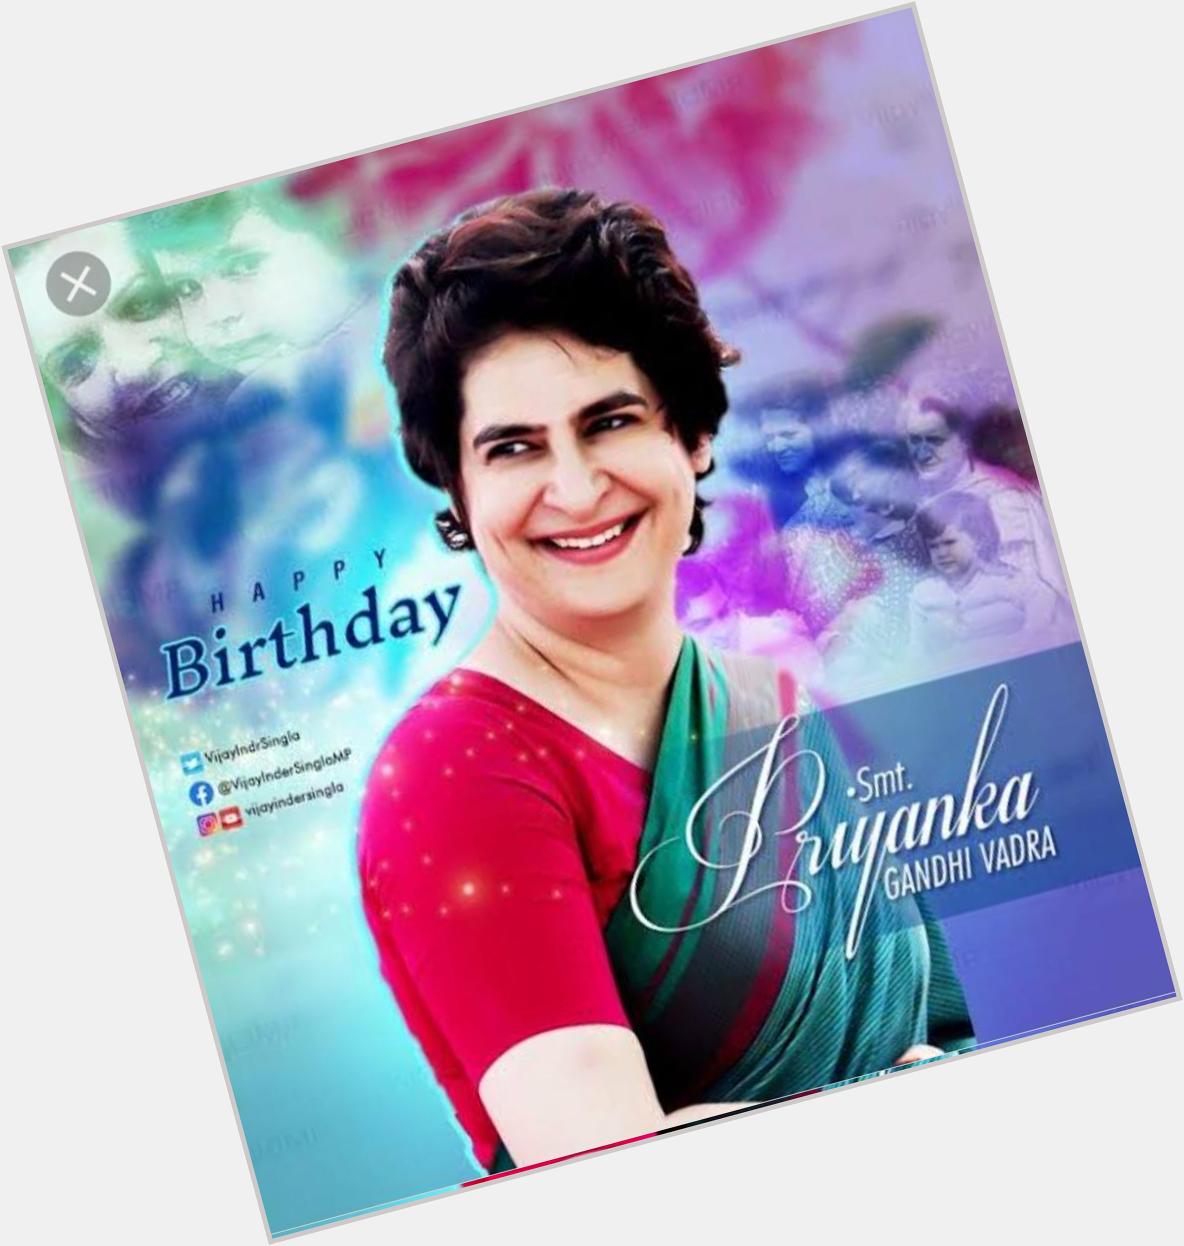  Happy Birthday Priyanka Gandhi Ji 